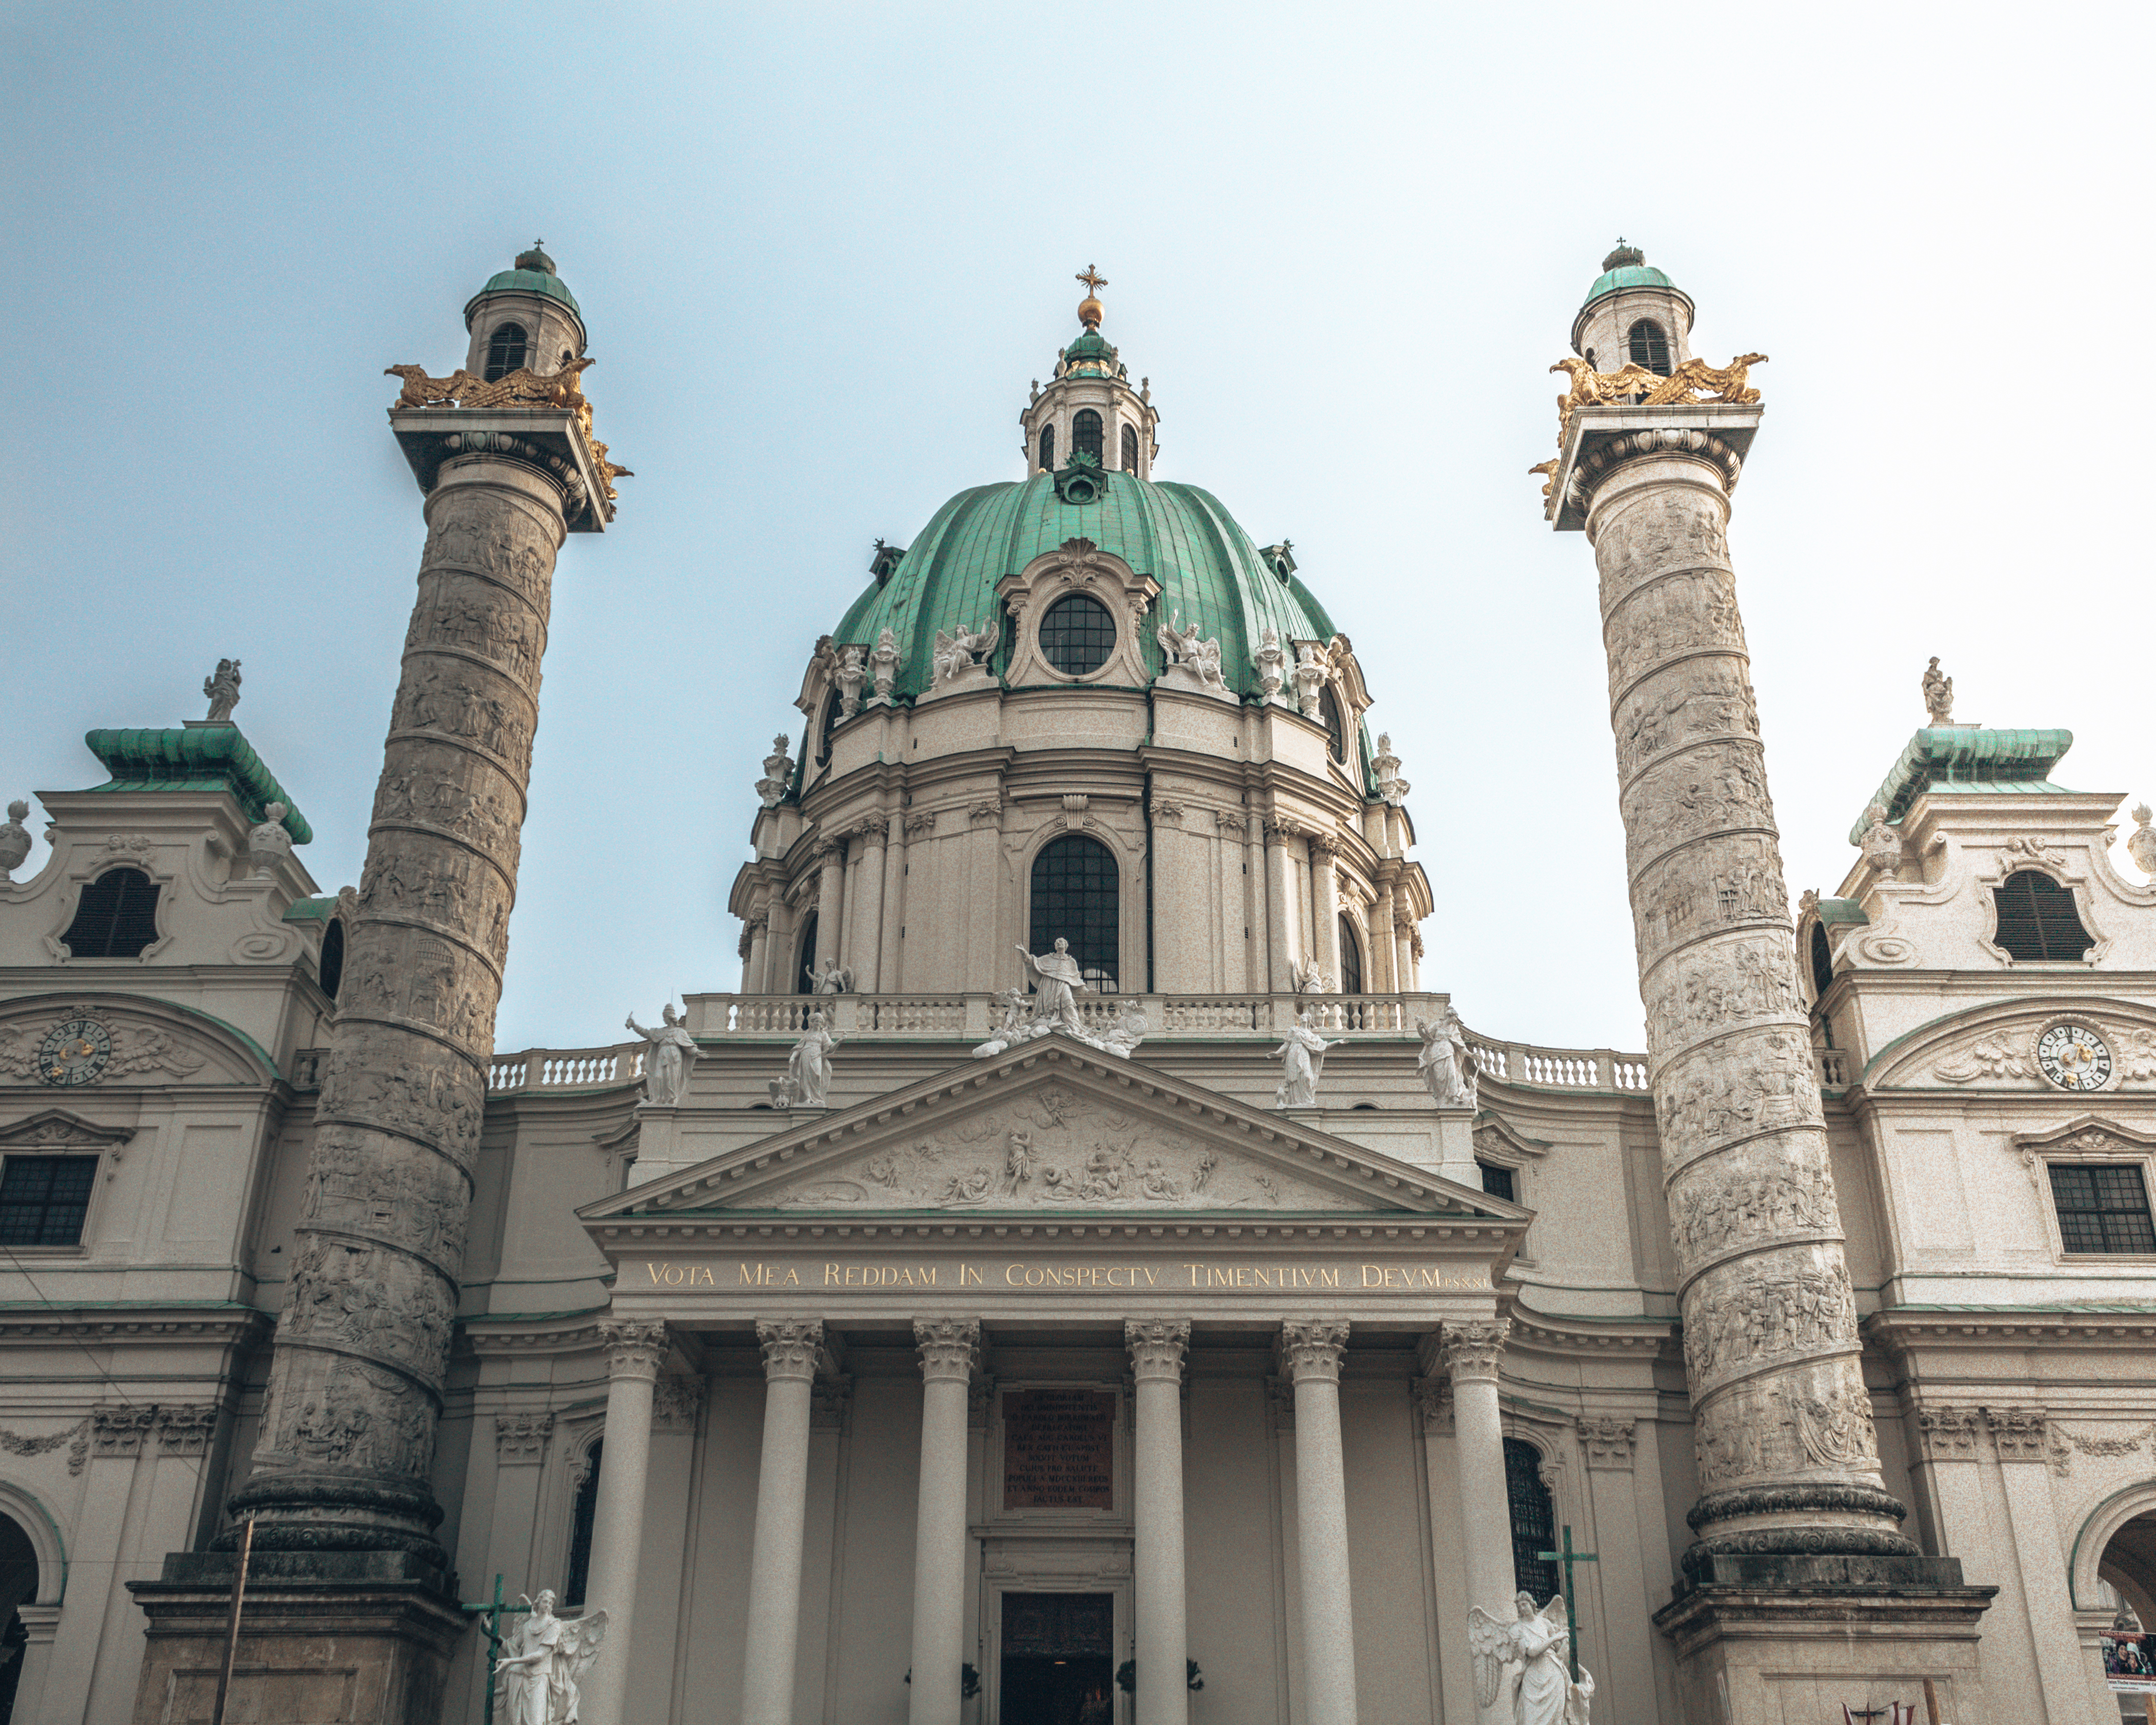 The Karlskirche in Vienna, Austria